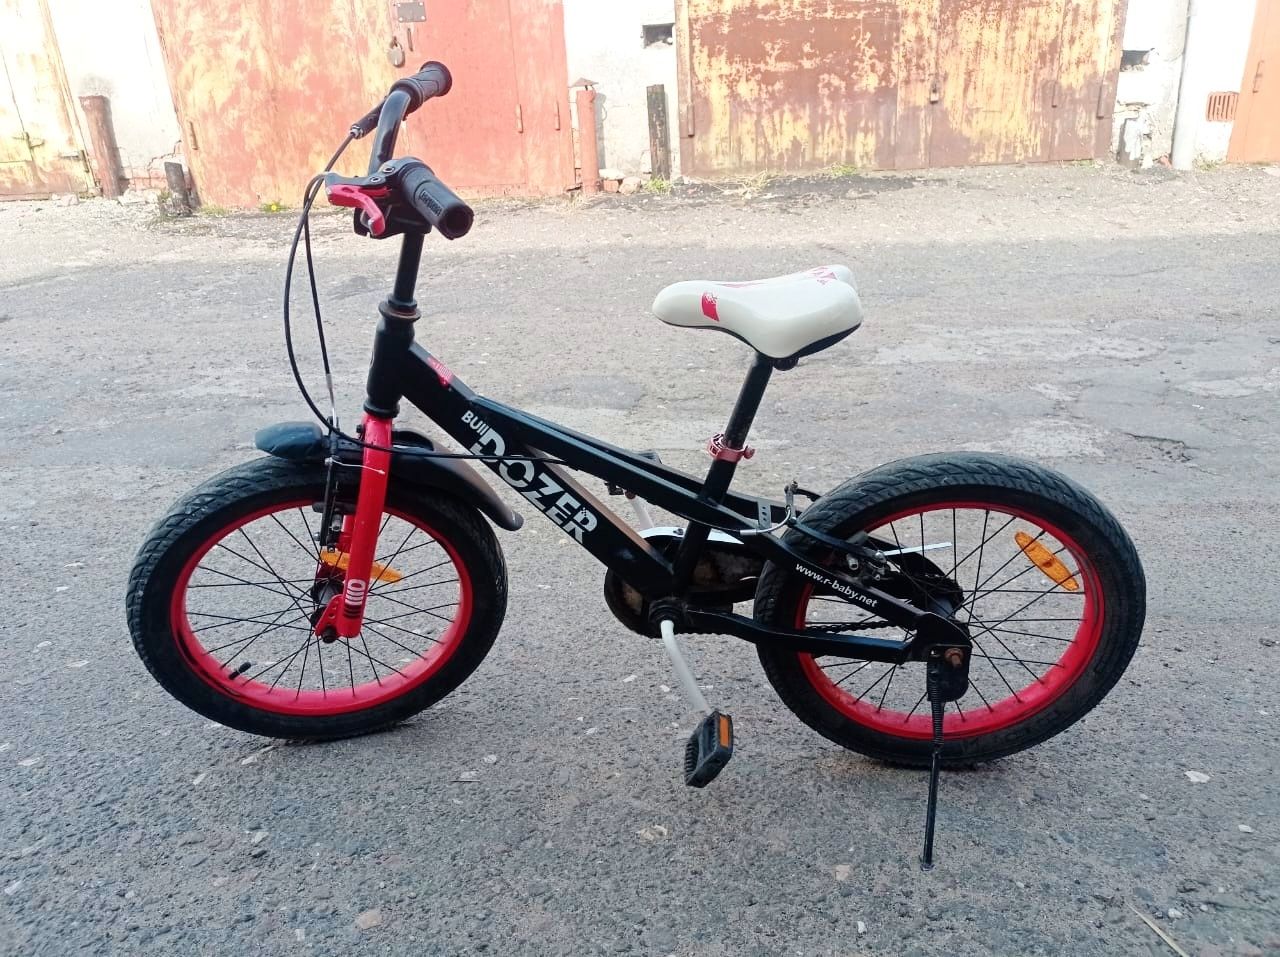 Продам дитячий велосипед! Ціна 2000грн, можливий торг.